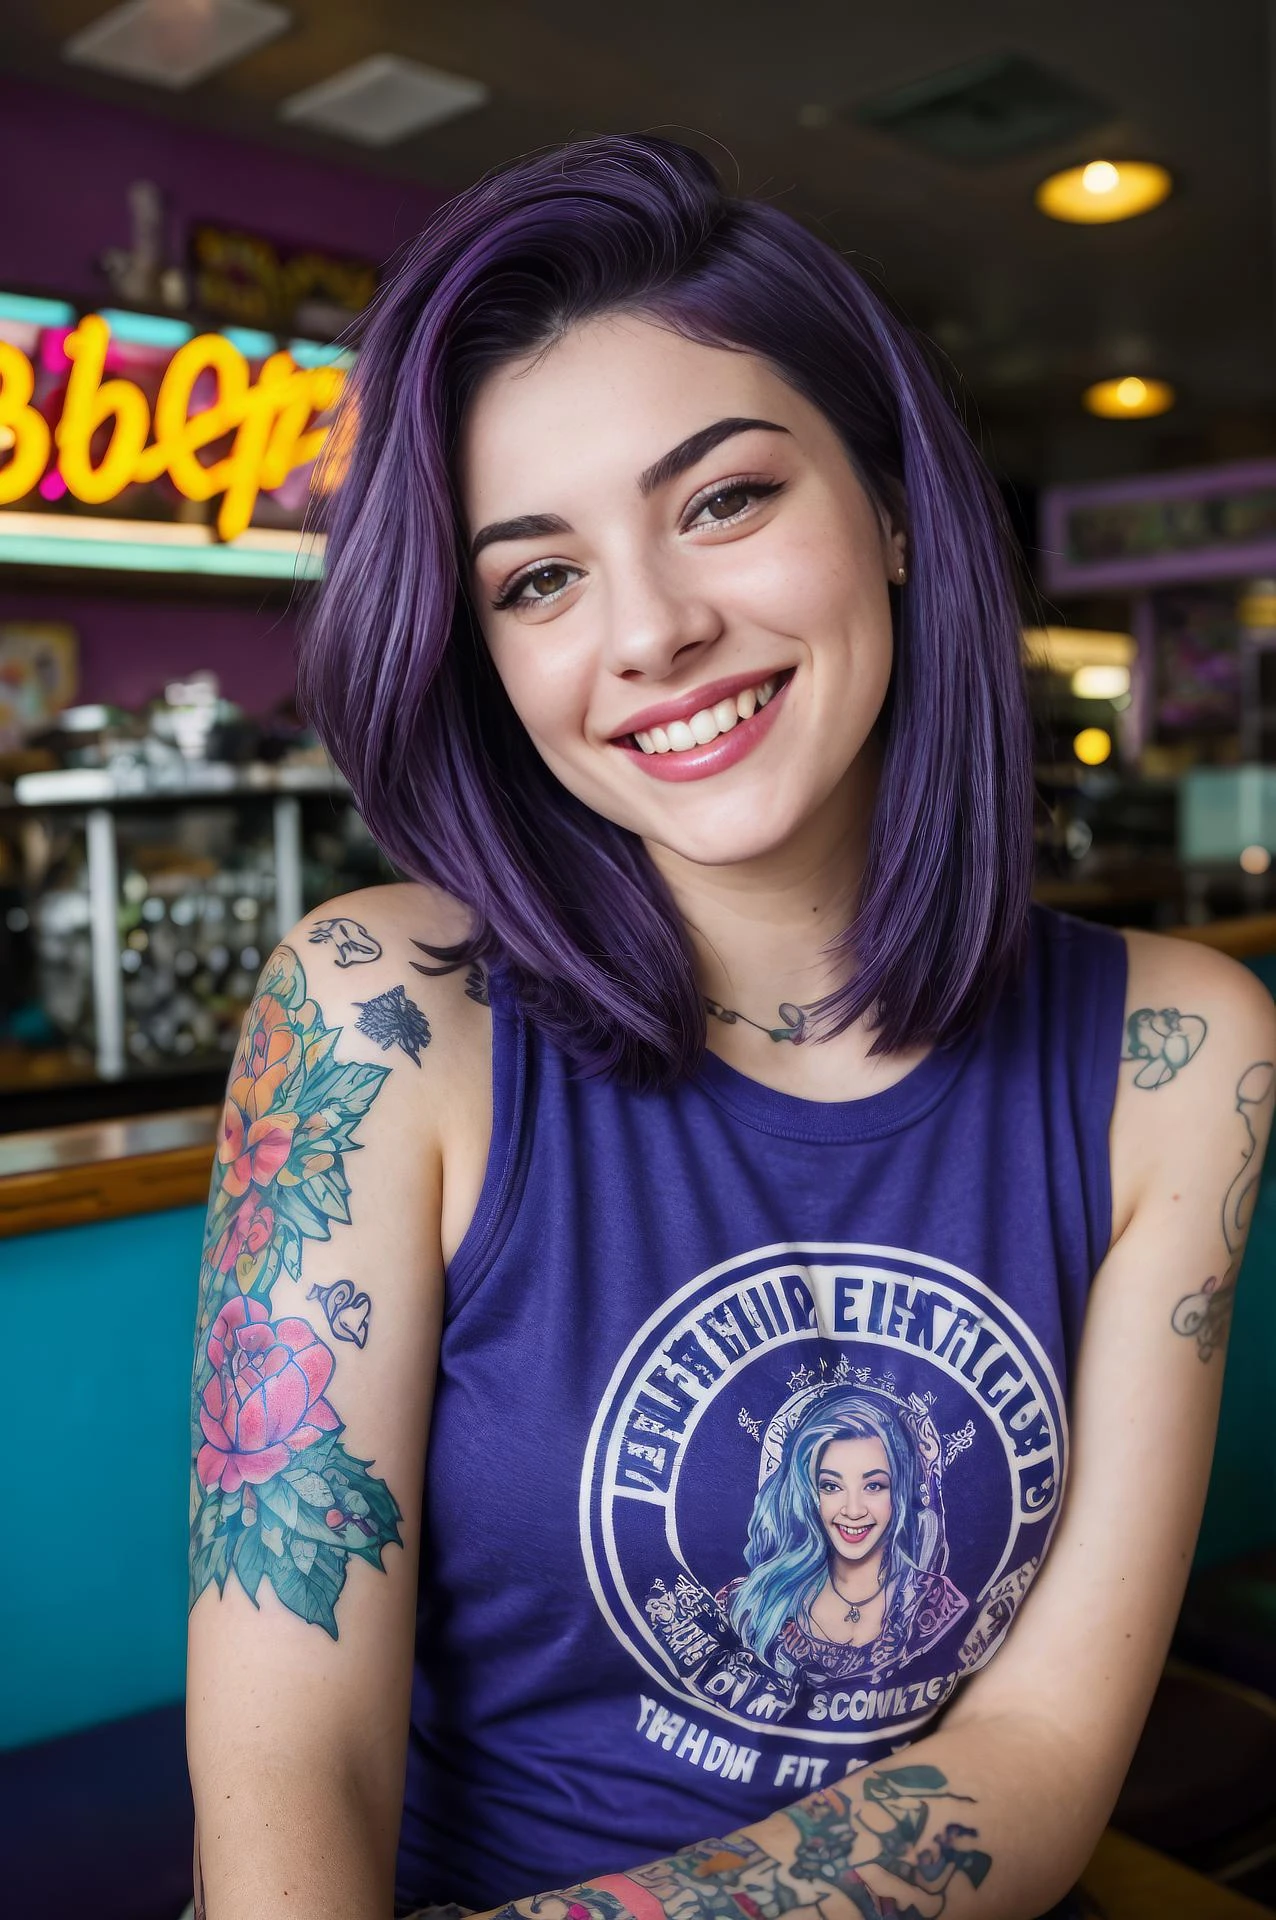 Straßenfotografie-Foto einer jungen Frau mit lila Haaren, lächeln, Glücklich, süßes T-Shirt, Tätowierungen auf ihren Armen, sitzen in einem 50er-Jahre-Diner 